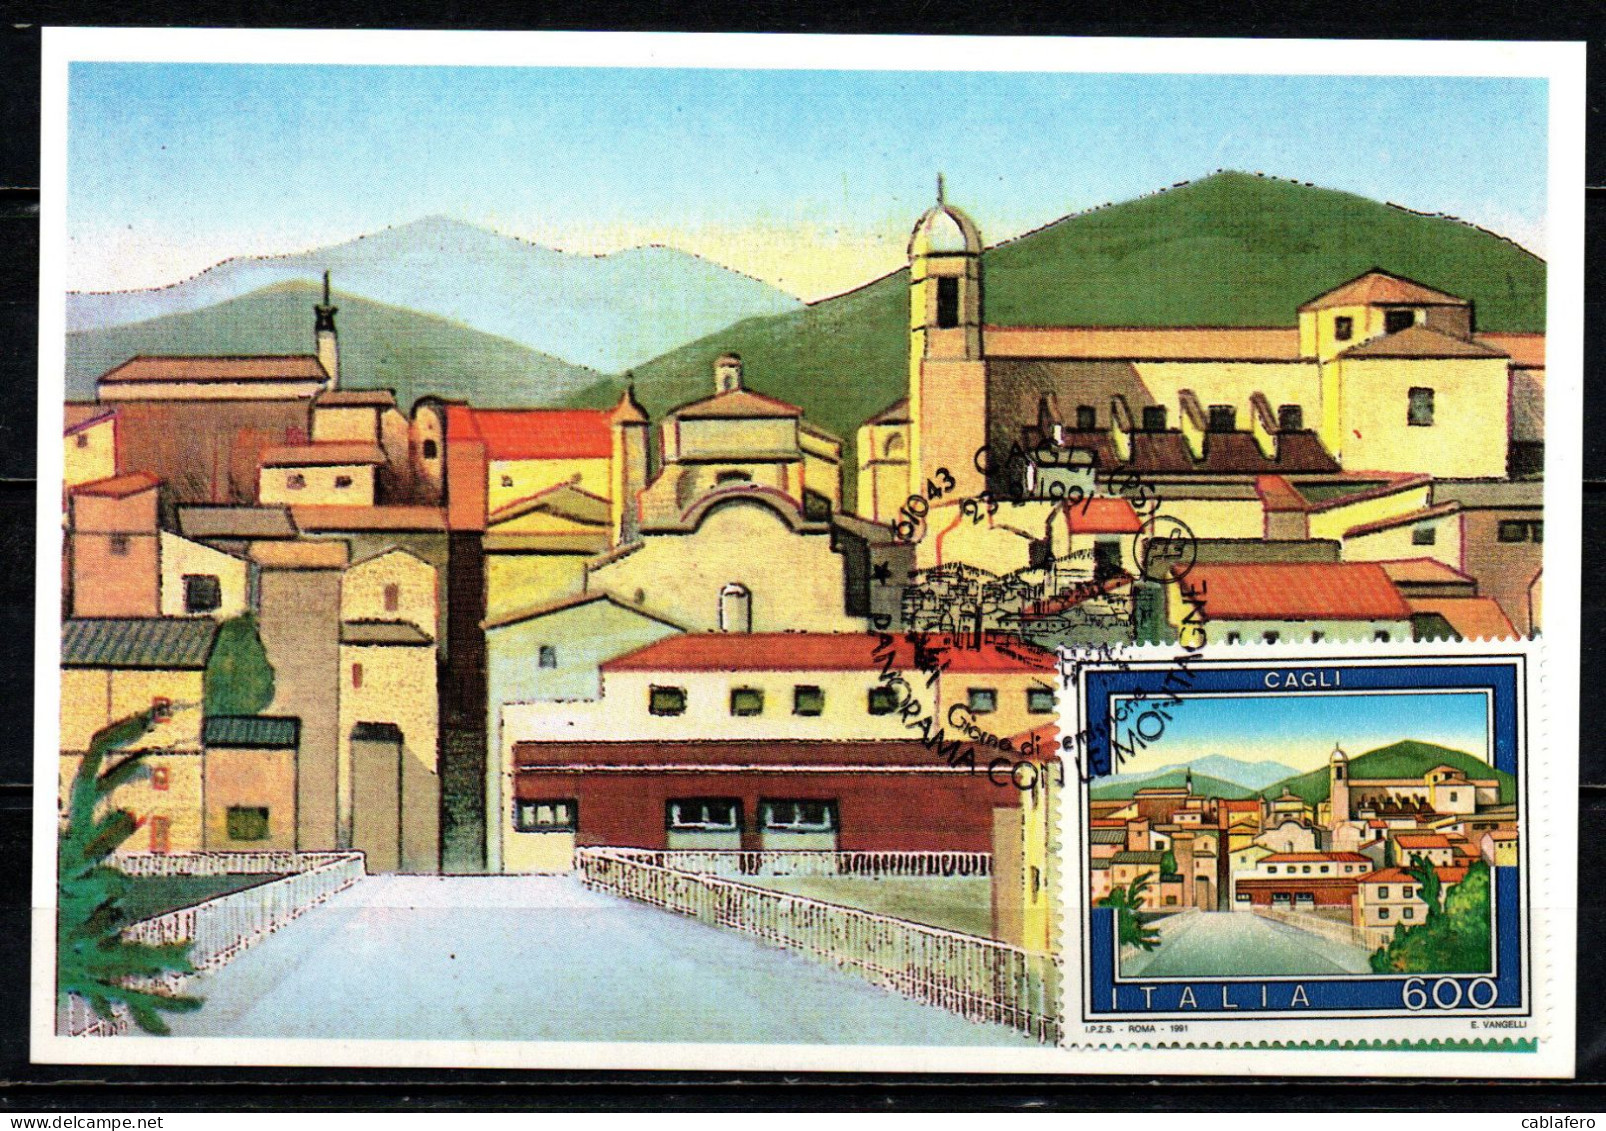 ITALIA - 1991 - IL TURISMO IN ITALIA: CAGLI - Maximumkaarten